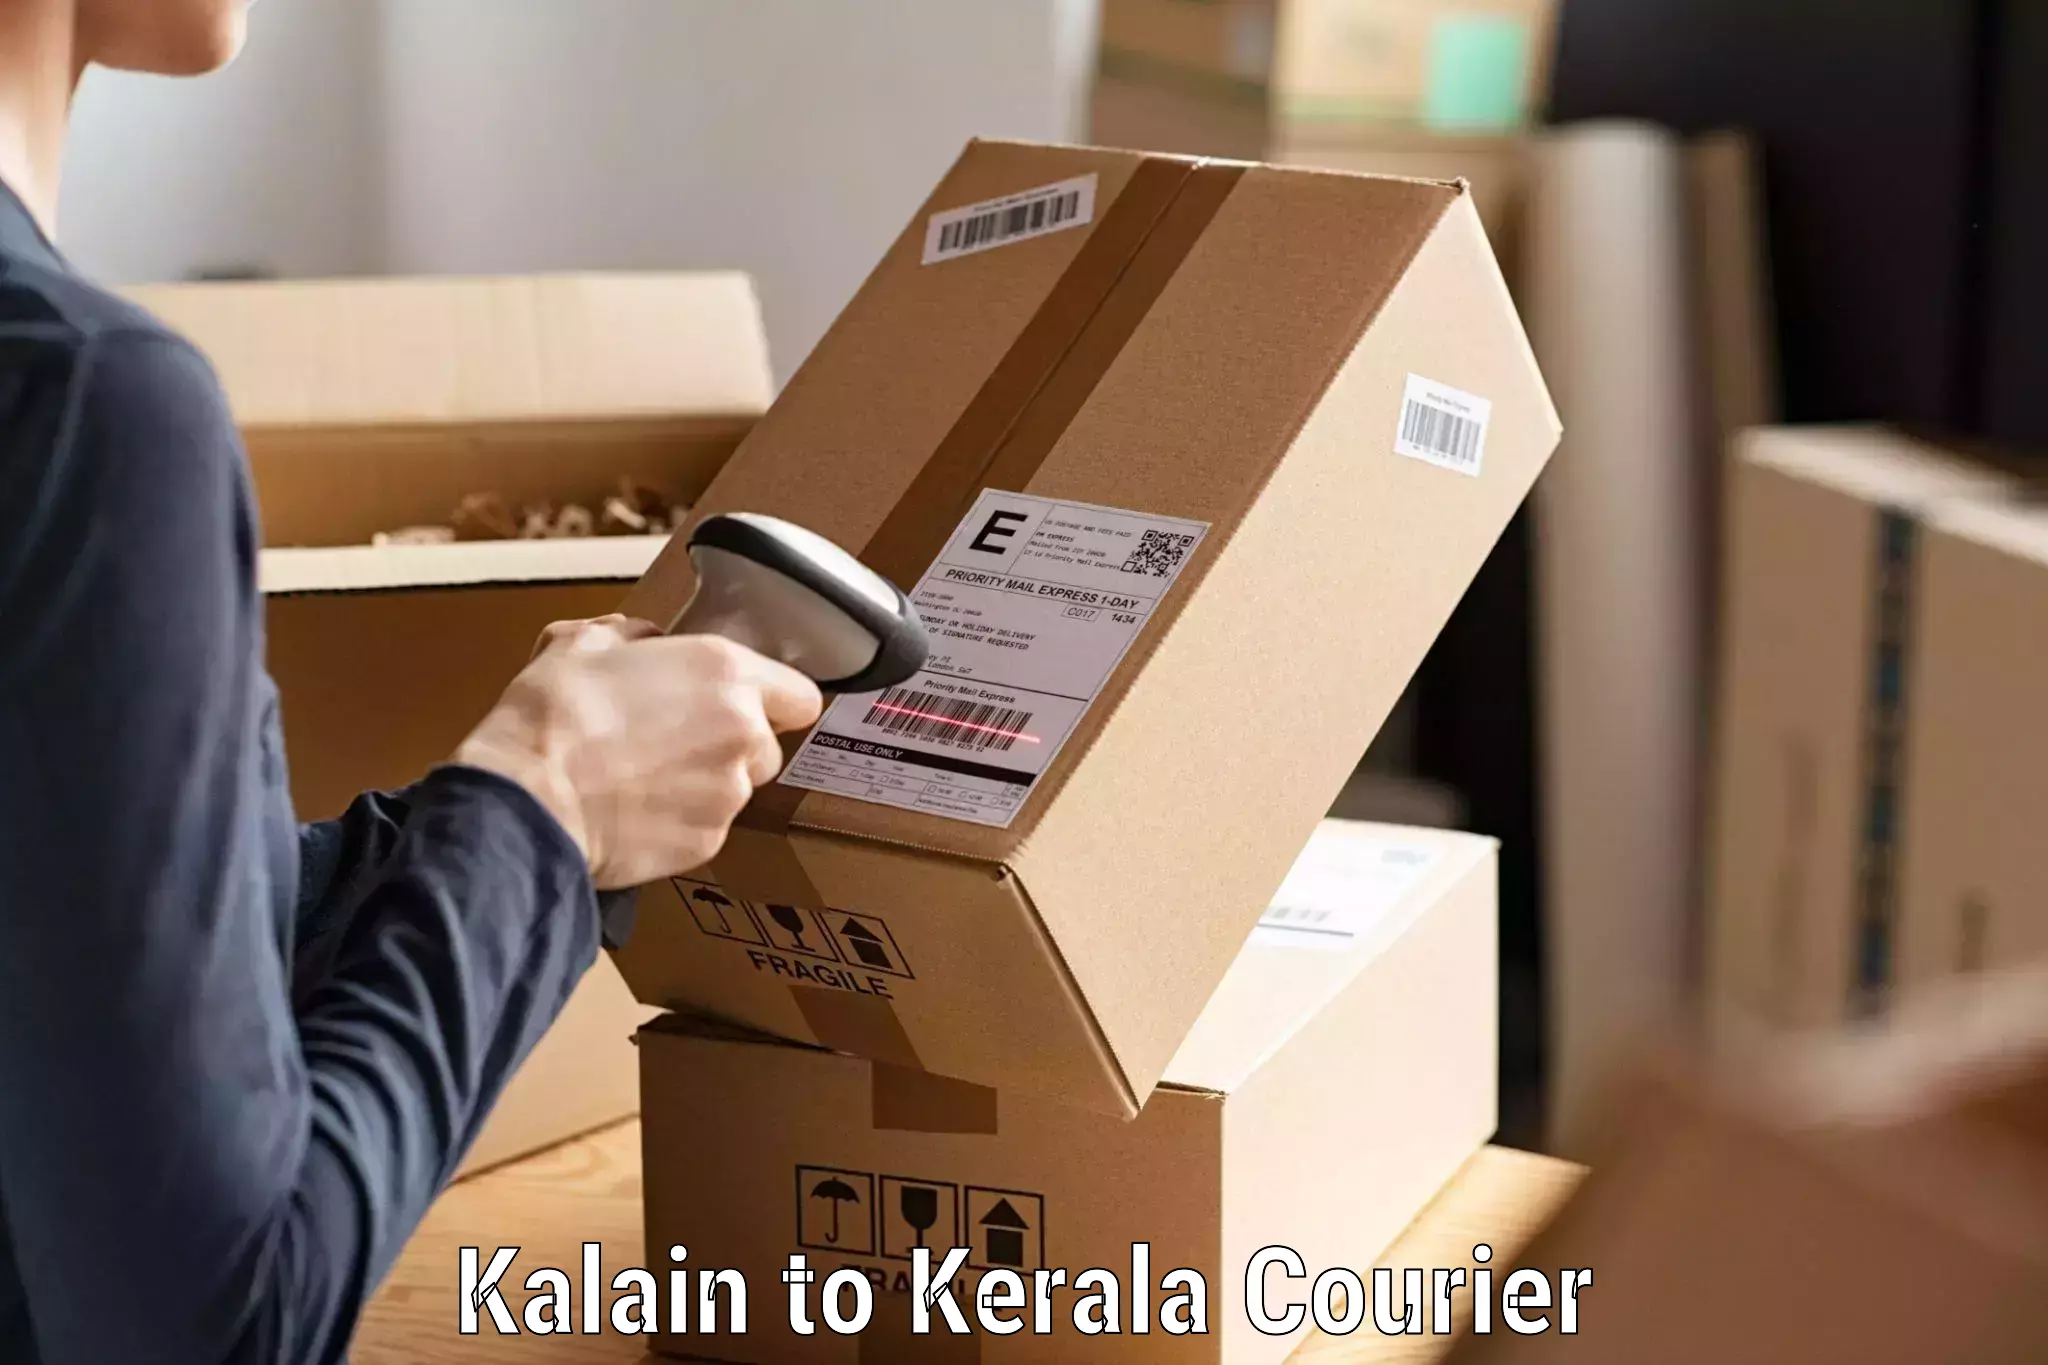 Customer-centric shipping Kalain to Kannur